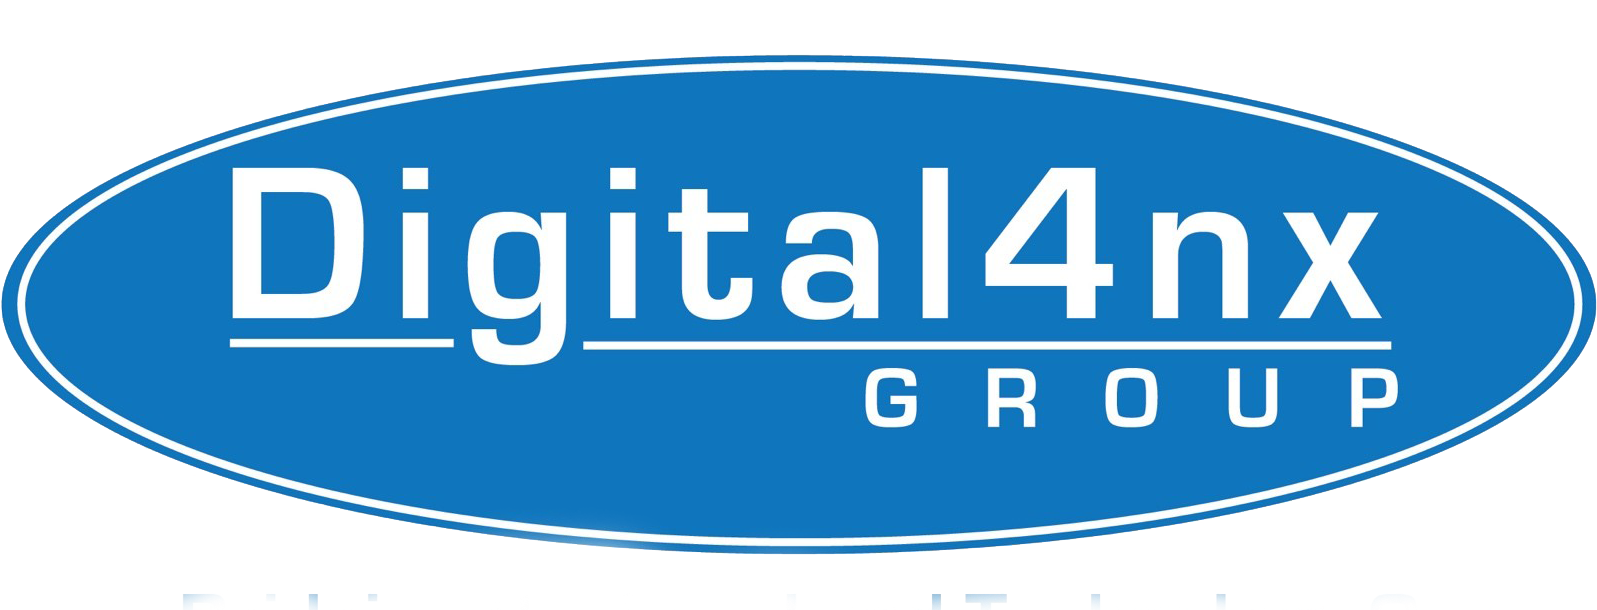 Digital-4nx-Logo